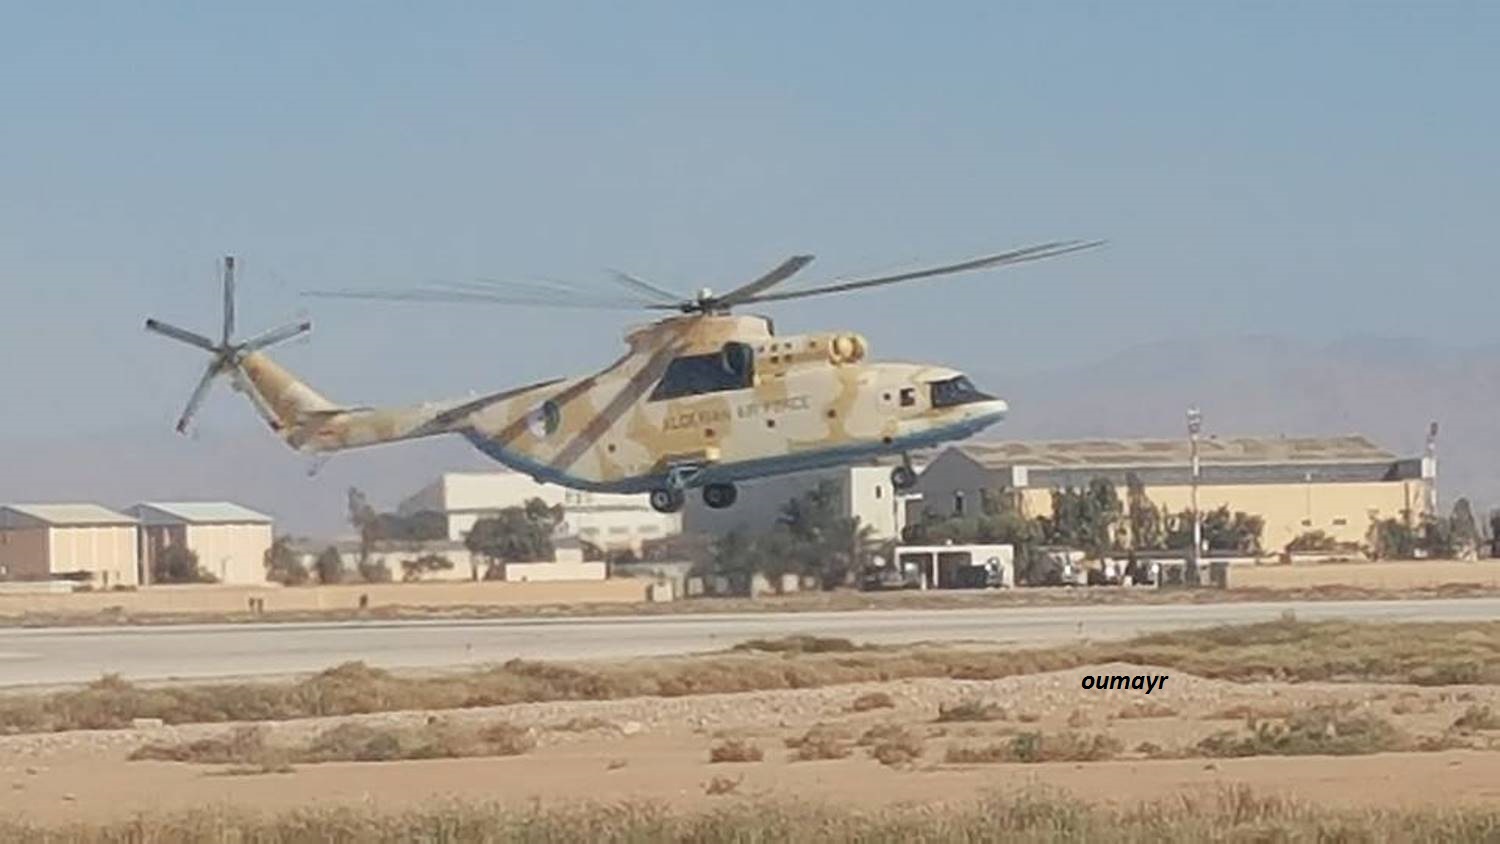 صور المروحيات الجزائرية  MI-26T2 - صفحة 18 32952189885_0903a5df34_o